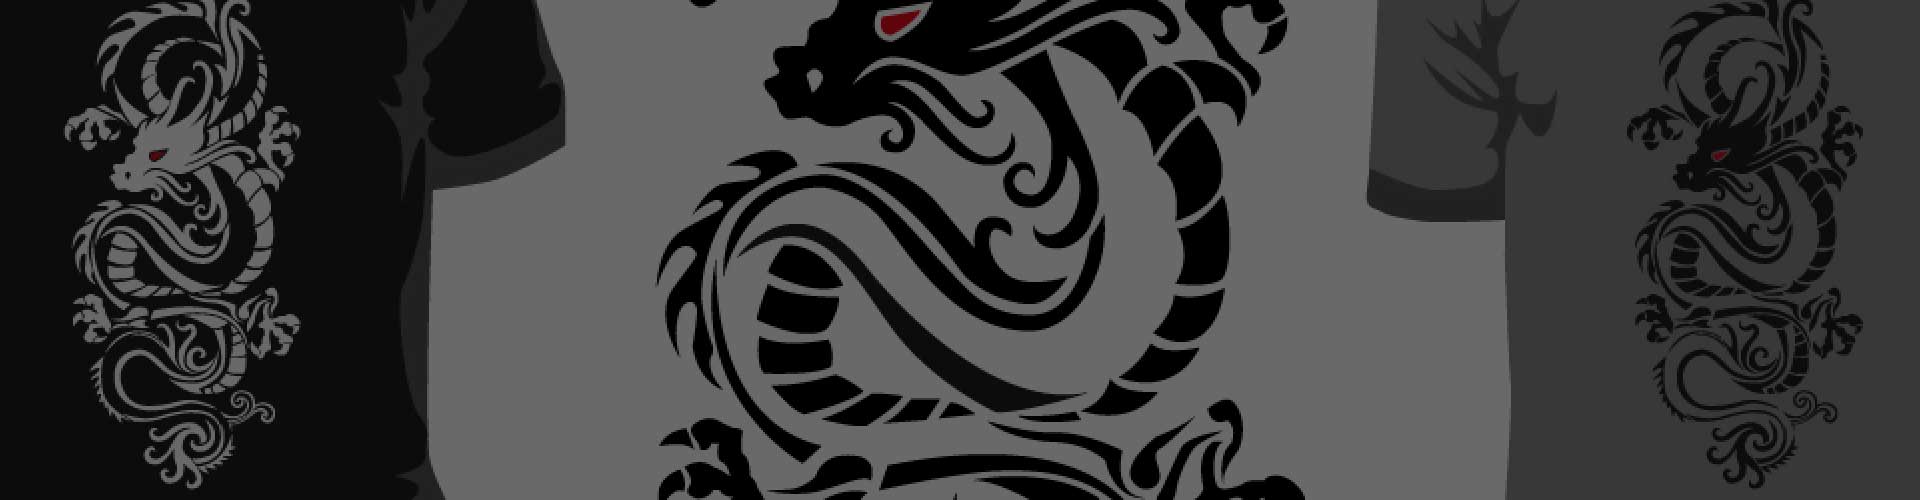 1920x500-dragon-tattoo